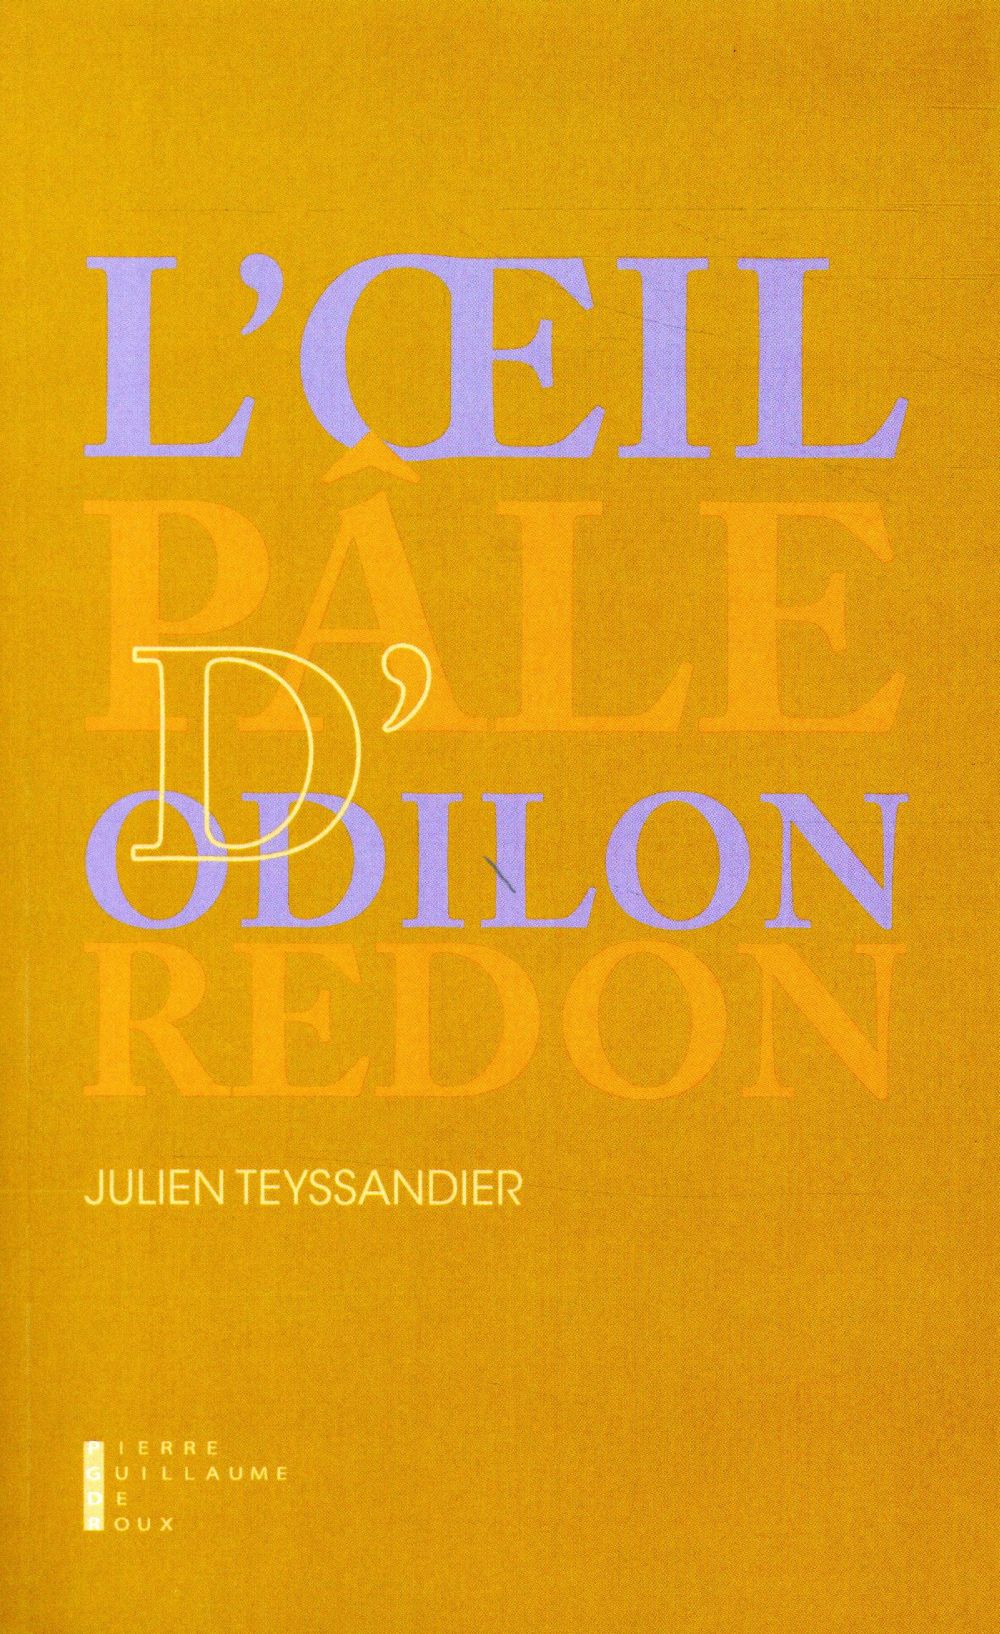 L'OEIL PALE D'ODILON REDON